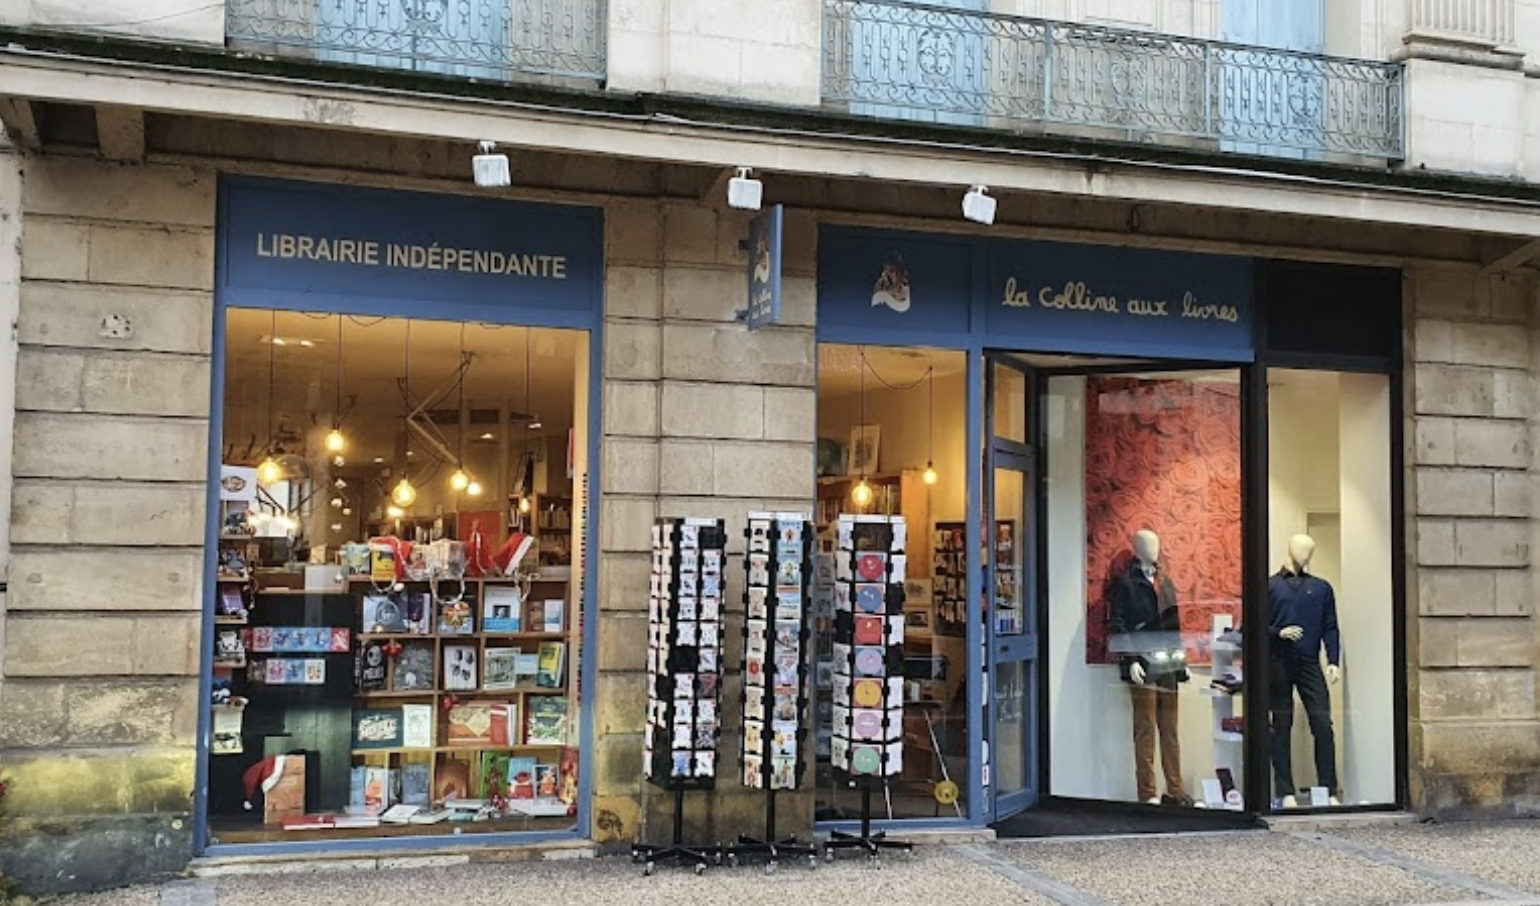 Librairie La Colline aux Livres